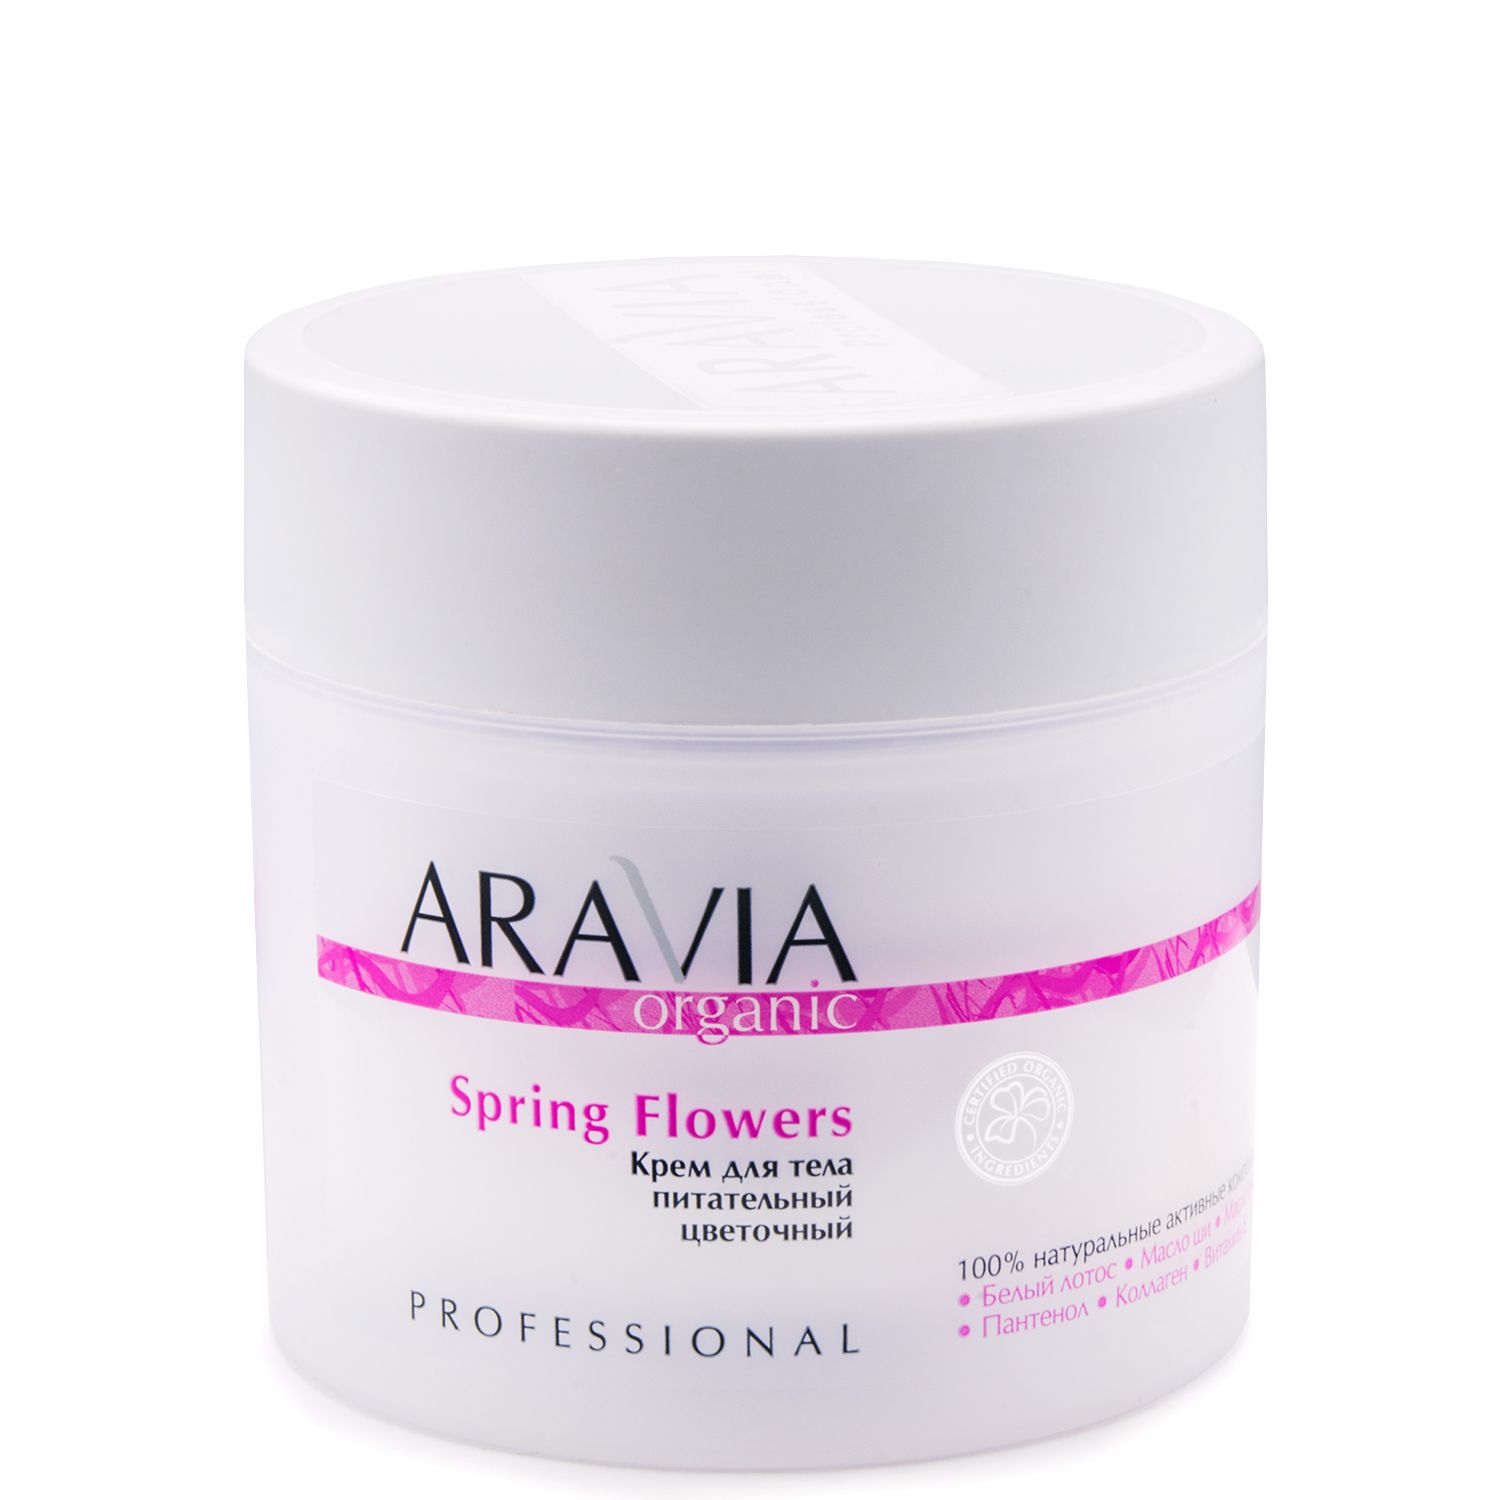 Aravia Organic Крем для тела питательный цветочный Spring Flowers, 300мл